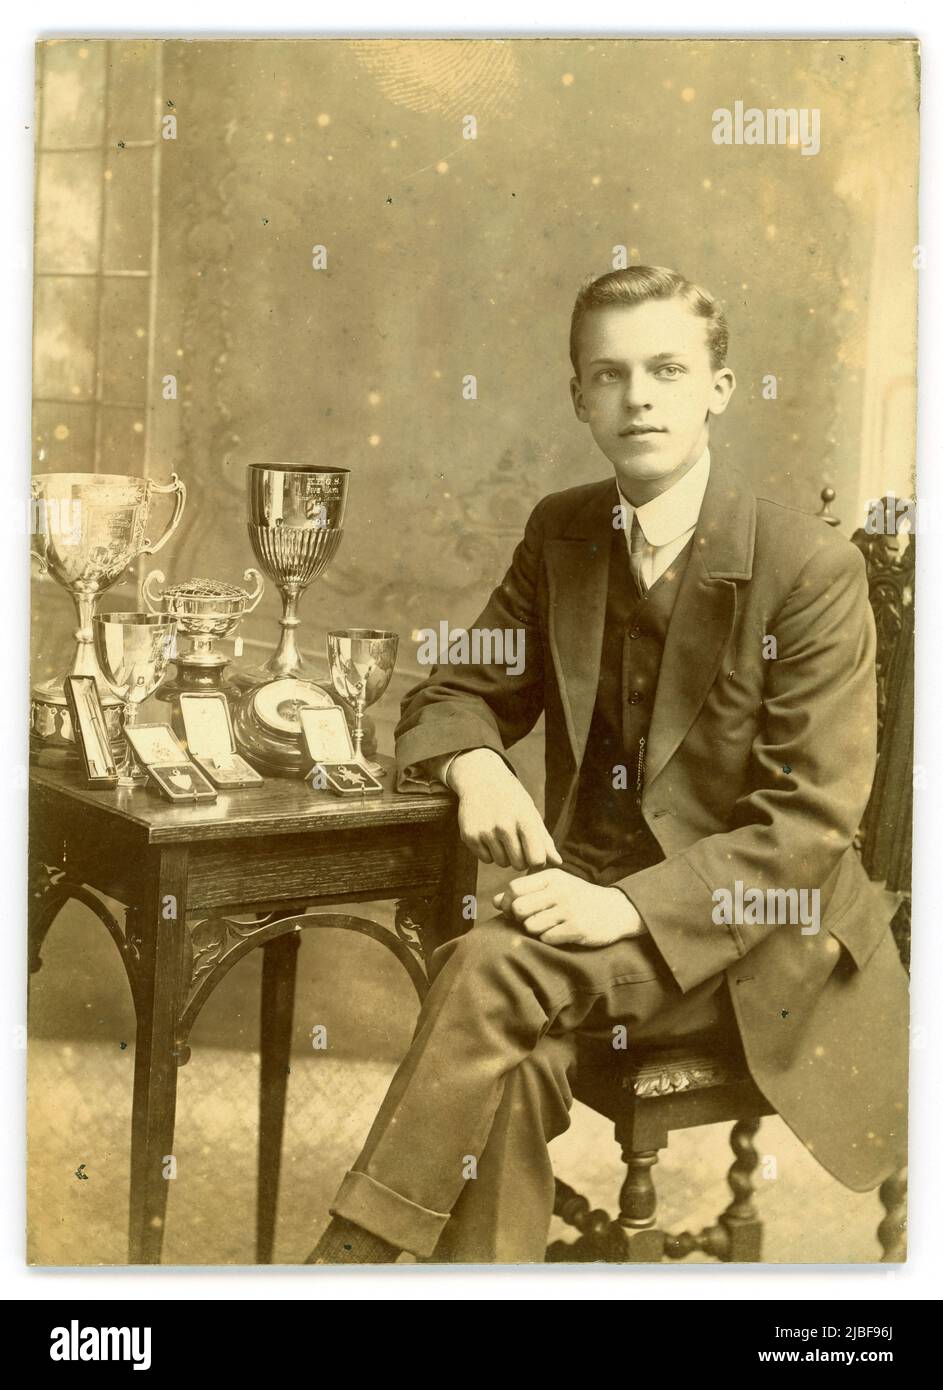 Original Studio-Porträtfoto eines gut aussehenden, selbstbewussten Teenagers an der King Edward V1 Five Ways Grammar School (K.E. G.S.) mit Preisen - es gibt einen großen silbernen Pokal aus dem Jahr 1911 und viele andere Medaillen und Pokale. Bartley Green, Birmingham, West Midlands, England, Großbritannien um 1914 Stockfoto